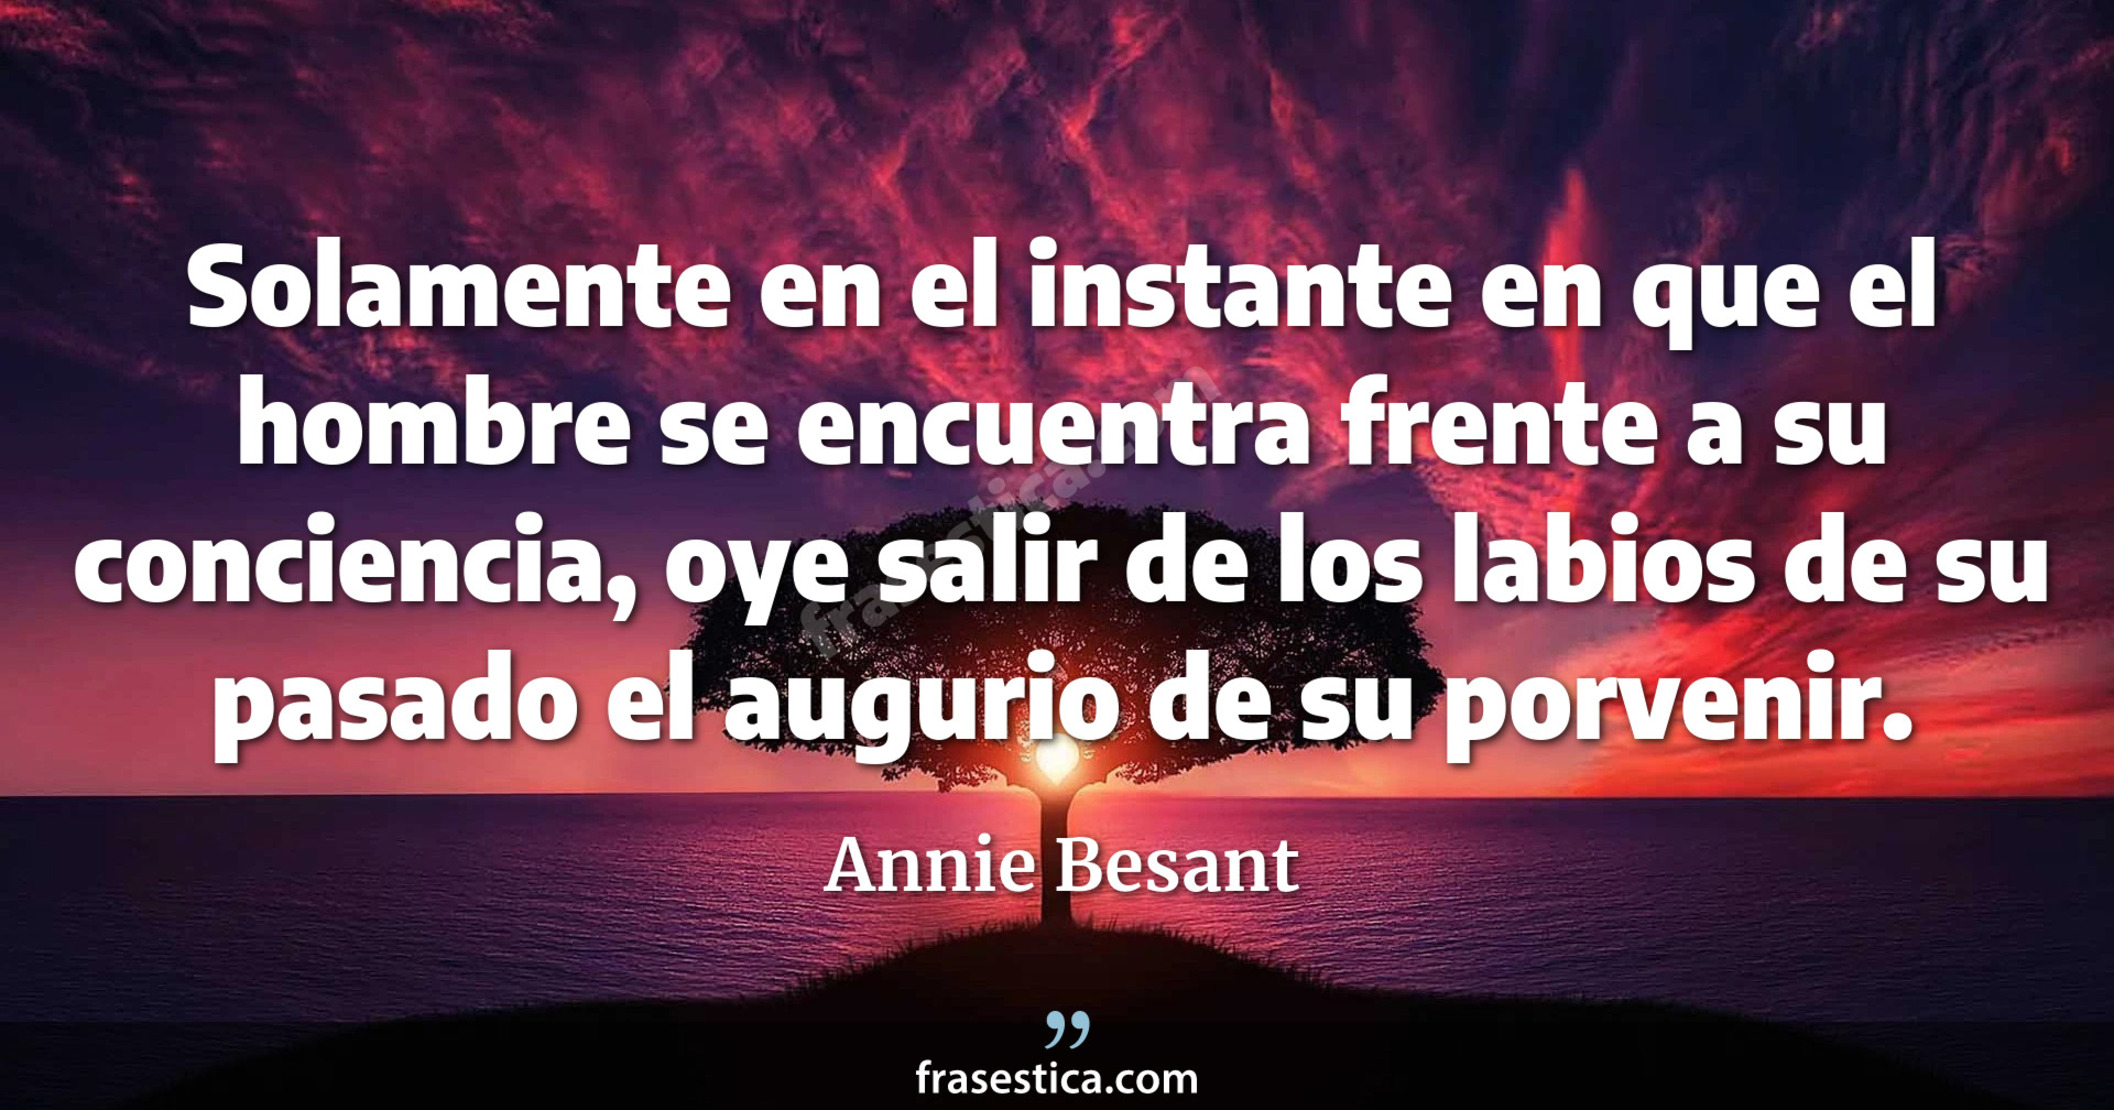 Solamente en el instante en que el hombre se encuentra frente a su conciencia, oye salir de los labios de su pasado el augurio de su porvenir. - Annie Besant